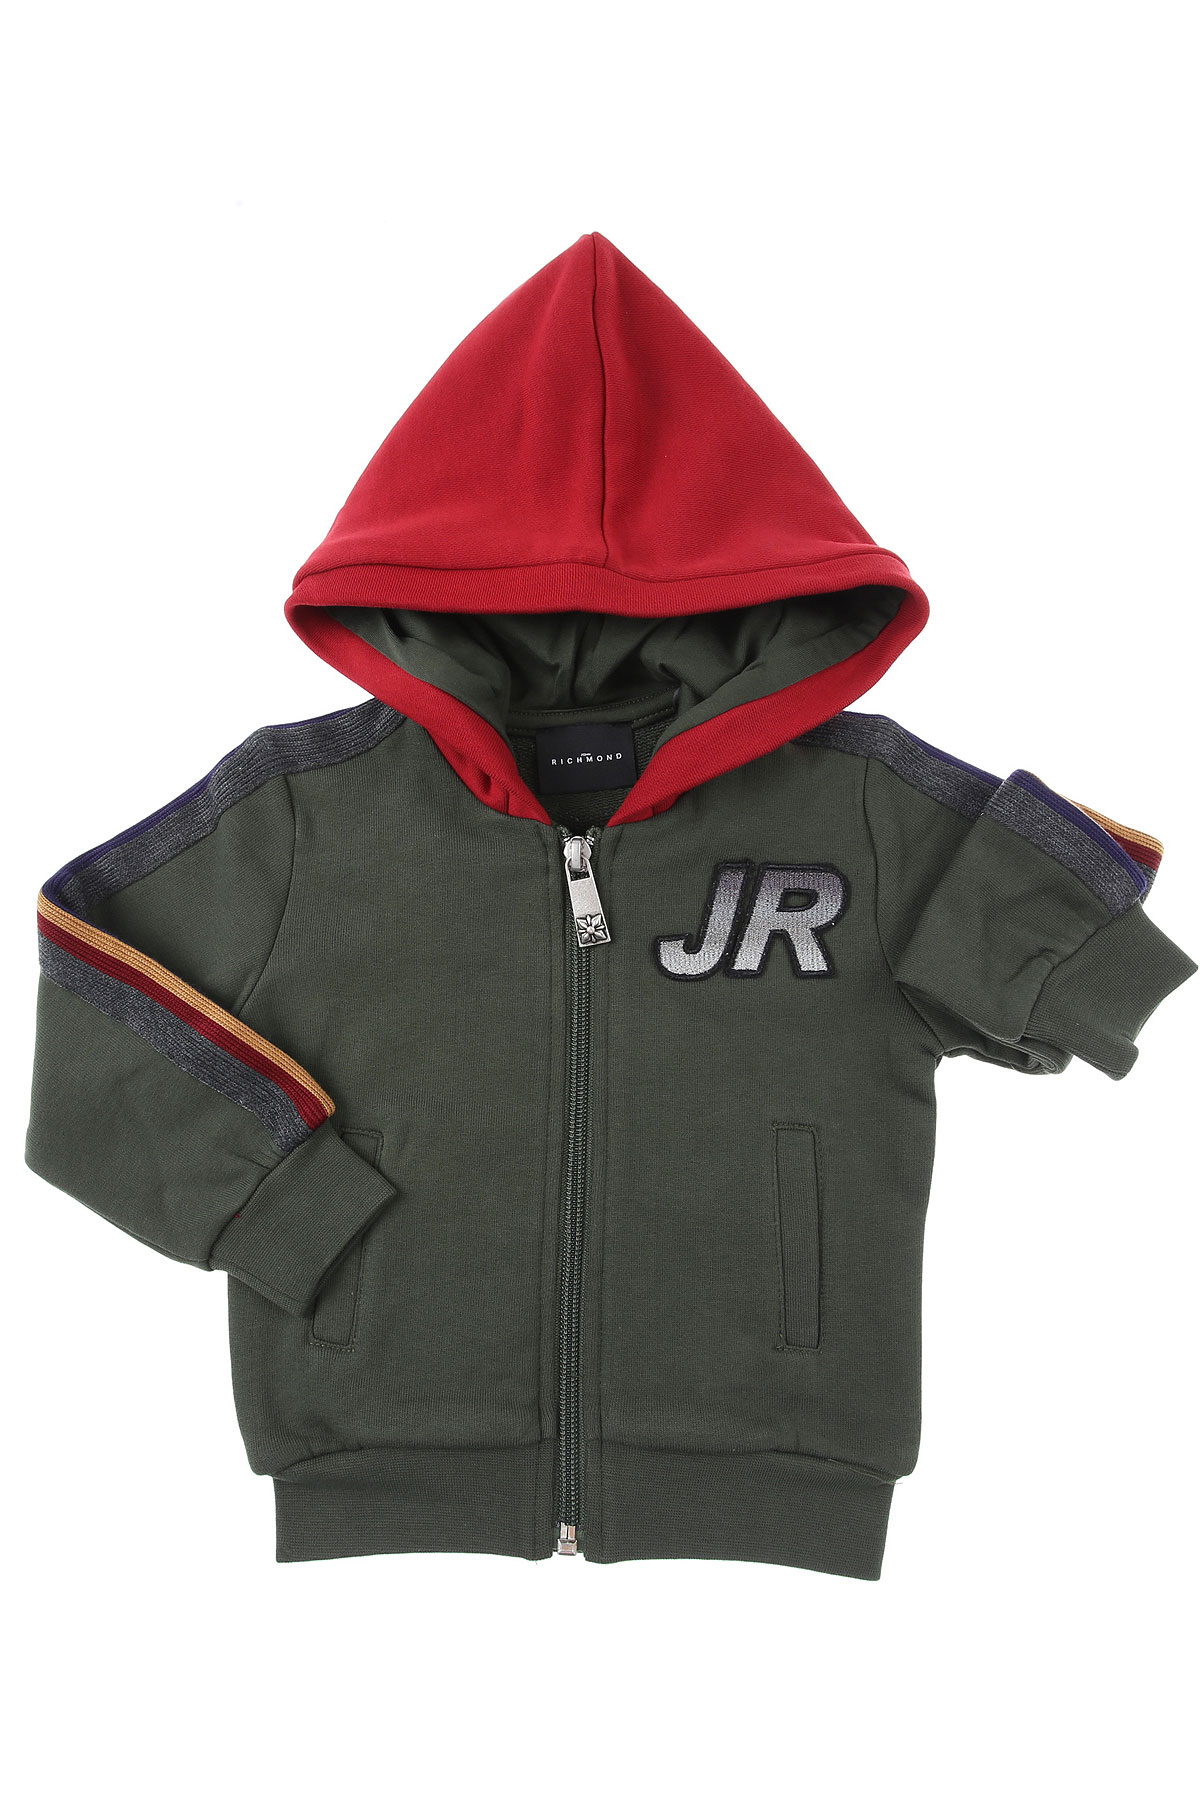 Richmond Baby Sweatshirt & Kapuzenpullover für Jungen Günstig im Sale, Militär Grün, Baumwolle, 2017, 12 M 18M 2Y 3Y 6M 9M